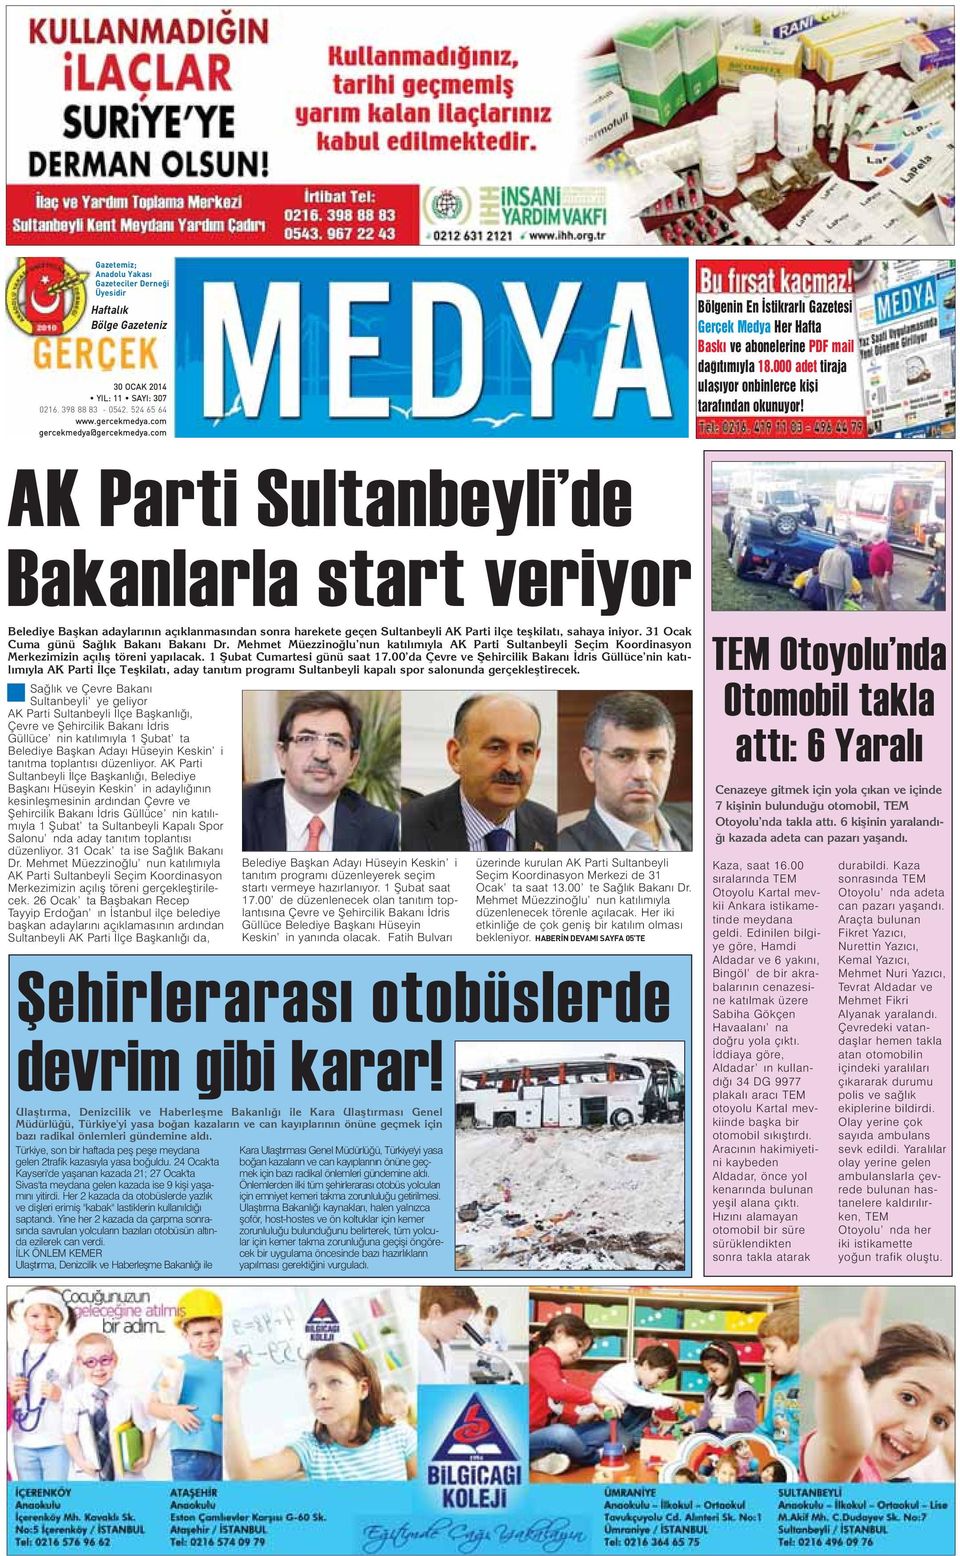 AK Parti Sultanbeyli de Bakanlarla start veriyor Belediye Başkan adaylarının açıklanmasından sonra harekete geçen Sultanbeyli AK Parti ilçe teşkilatı, sahaya iniyor.